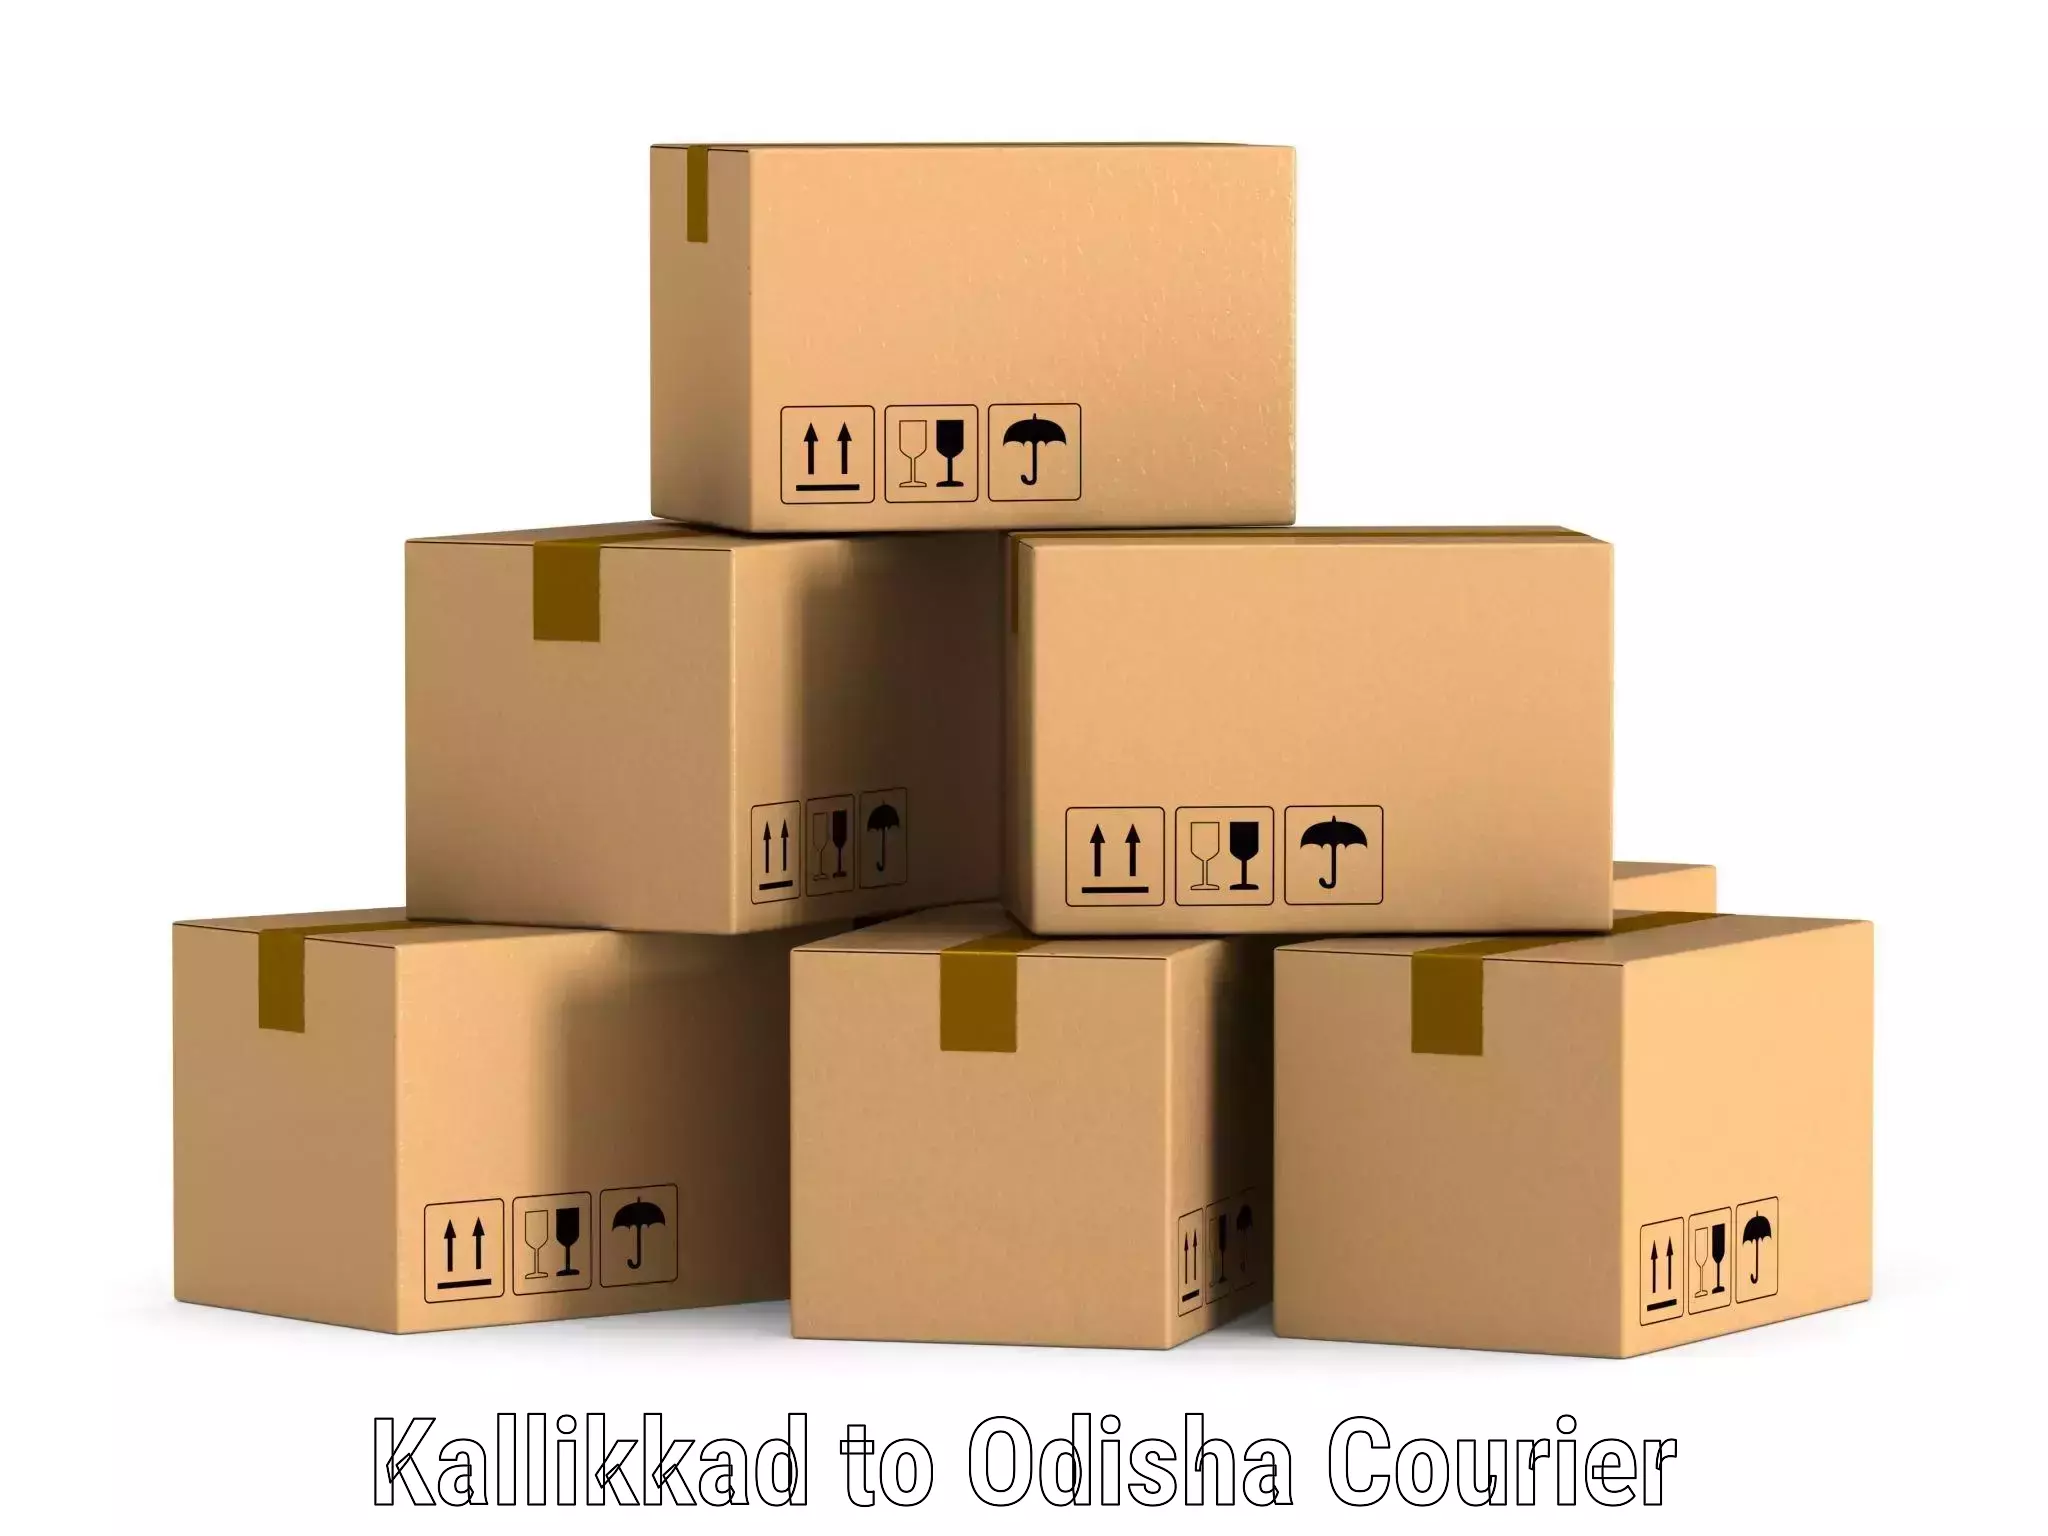 High-speed parcel service Kallikkad to Baripada